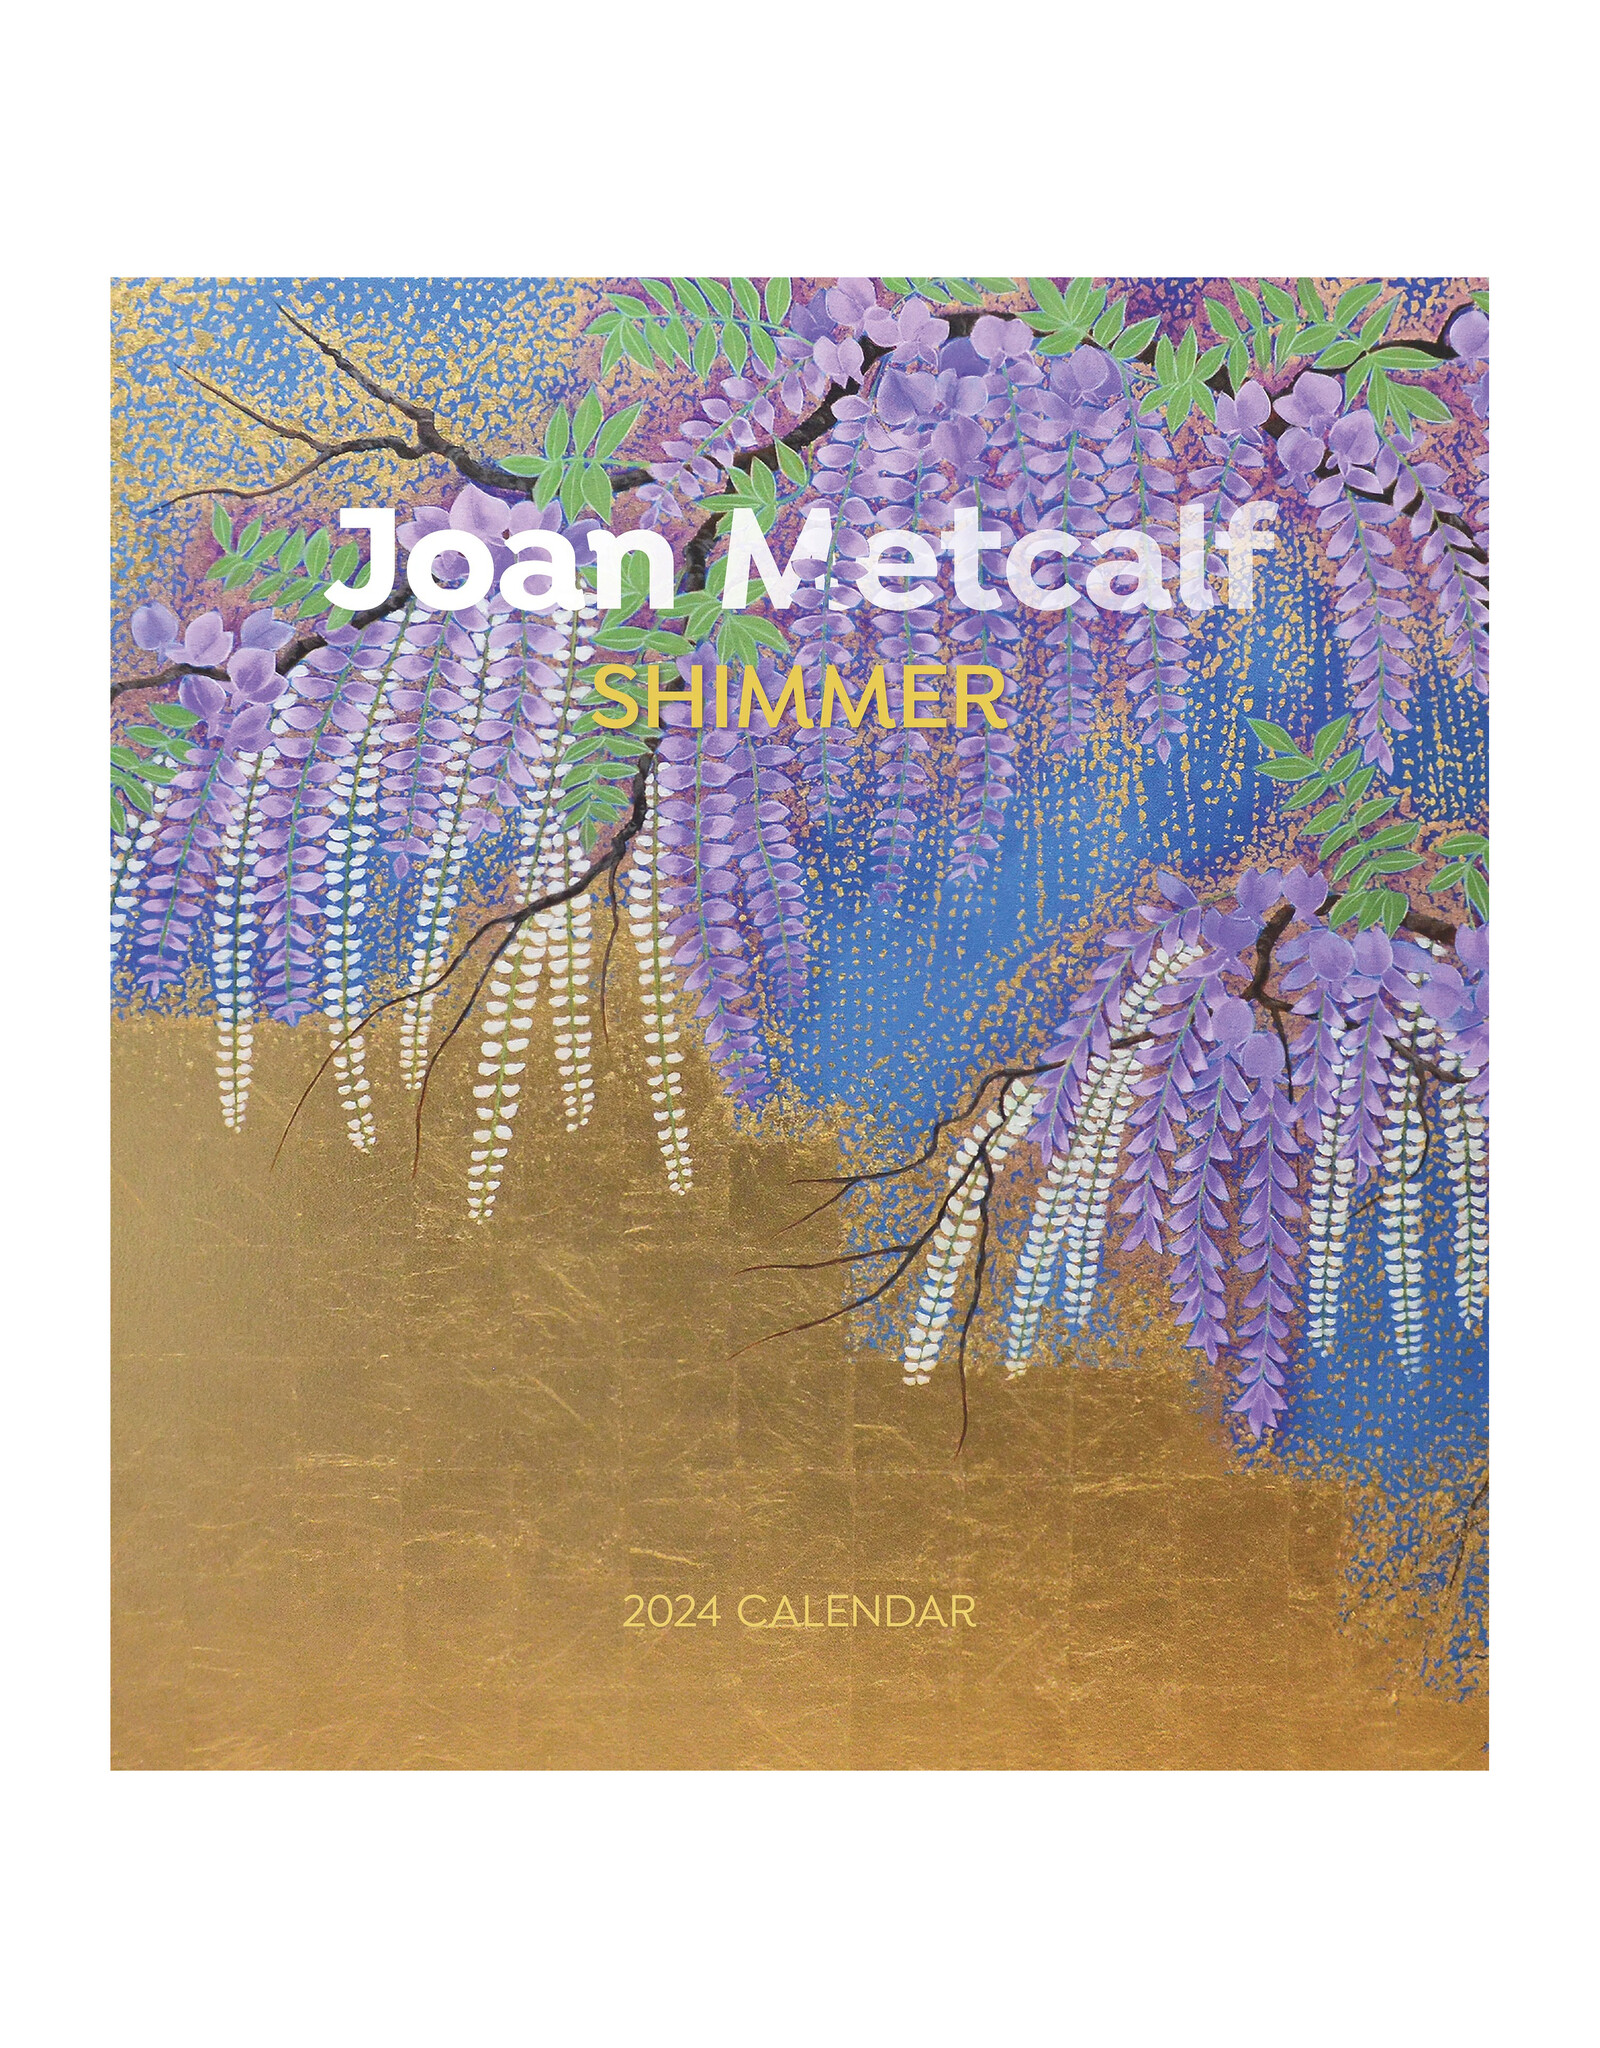 Pomegranate Joan Metcalf: Shimmer 2024 Wall Calendar